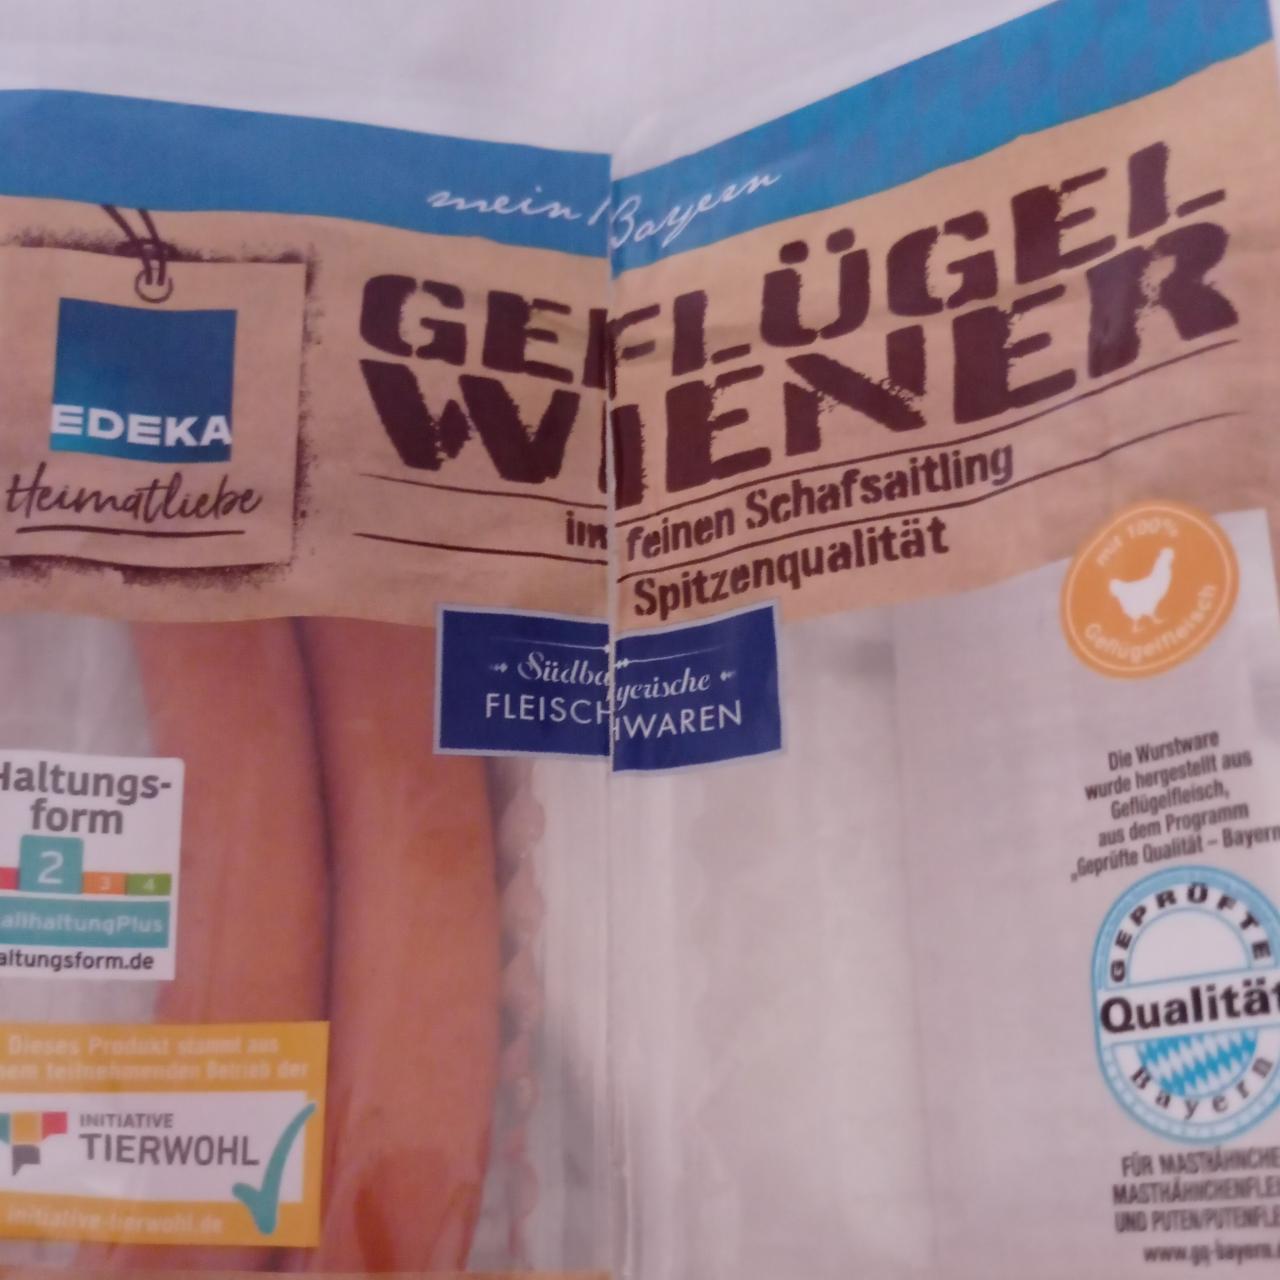 Fotografie - Geflügel Wiener Edeka